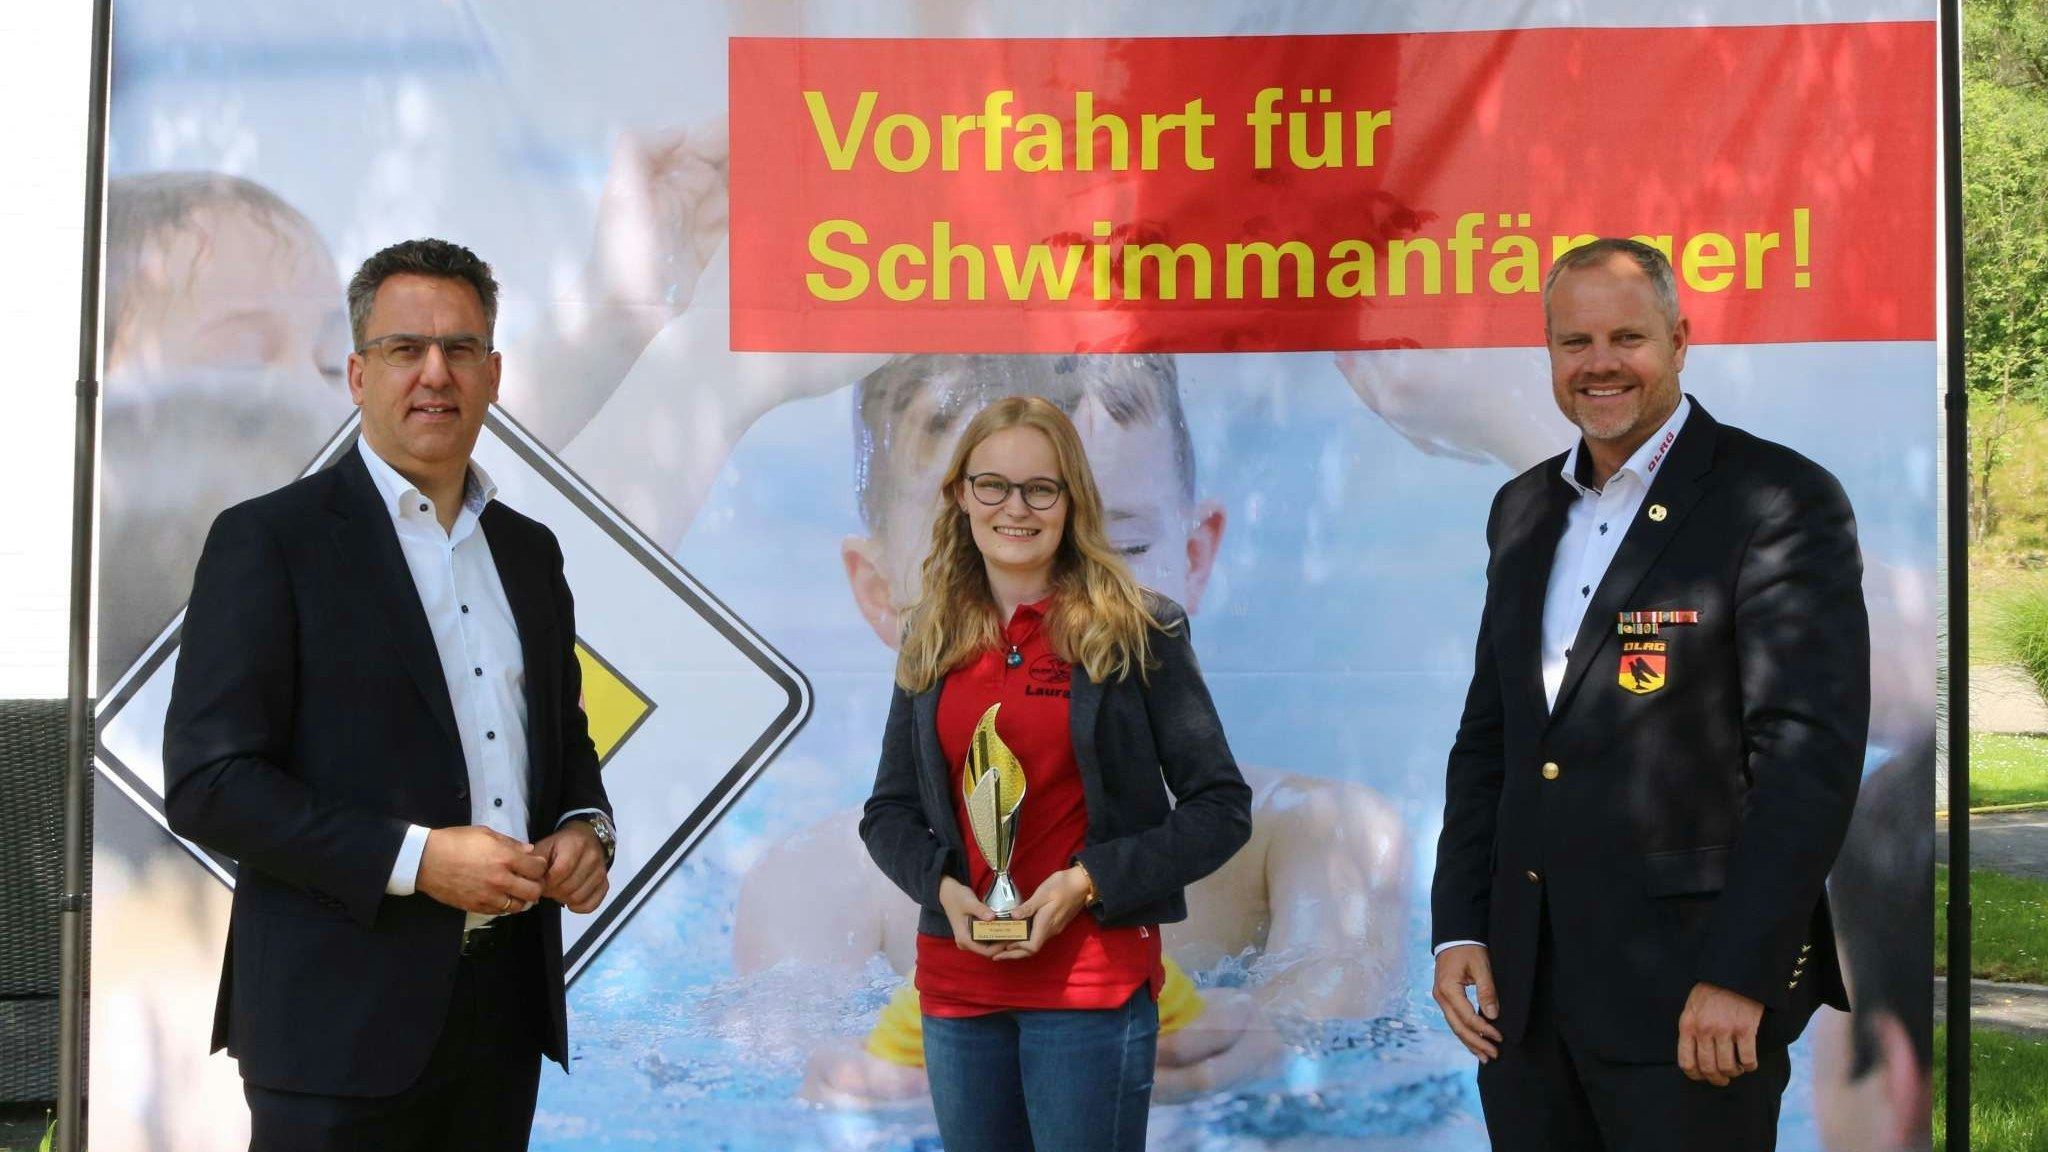 Stolz auf die Auszeichnung: Die Technische Leiterin Laura Rohe nahm einen kleinen Pokal von Präsident Oliver Liersch (links) und dem Vizepräsidenten Hendrik Schultz entgegen. Foto: DLRG